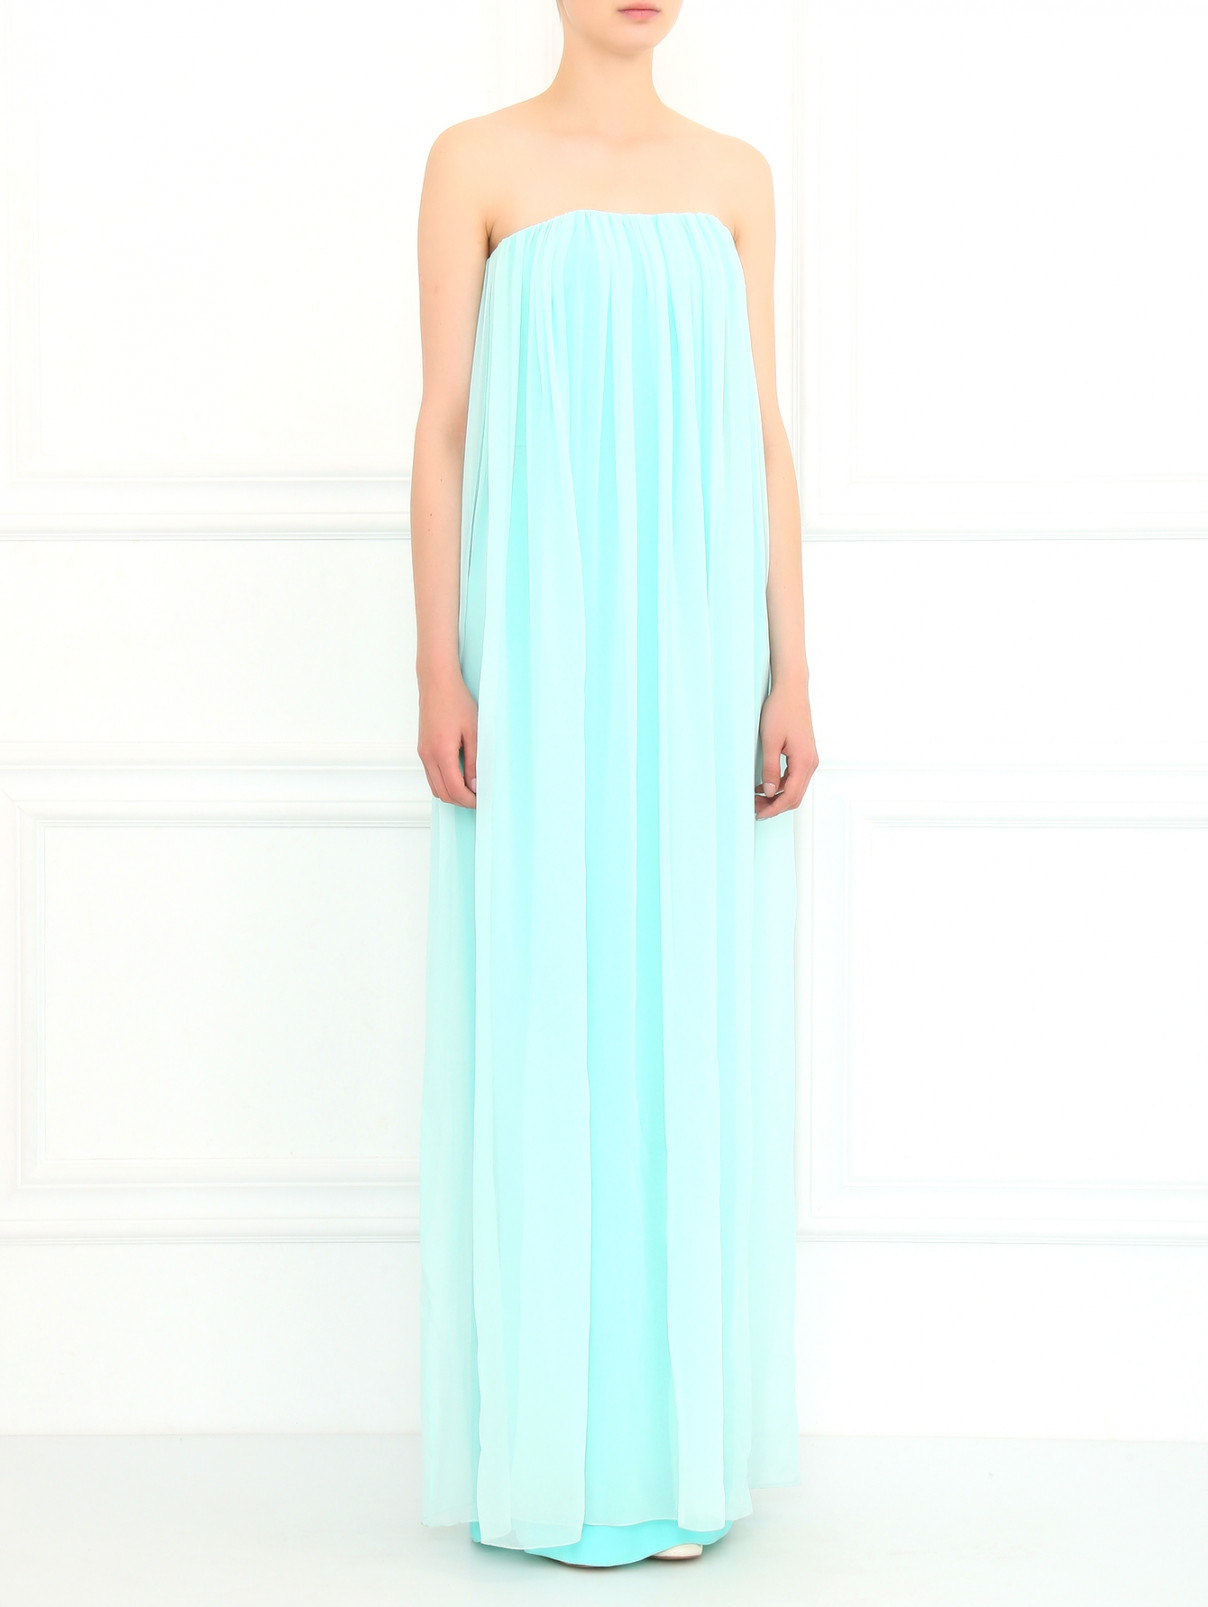 Платье-макси из шелка Kira Plastinina  –  Модель Общий вид  – Цвет:  Синий